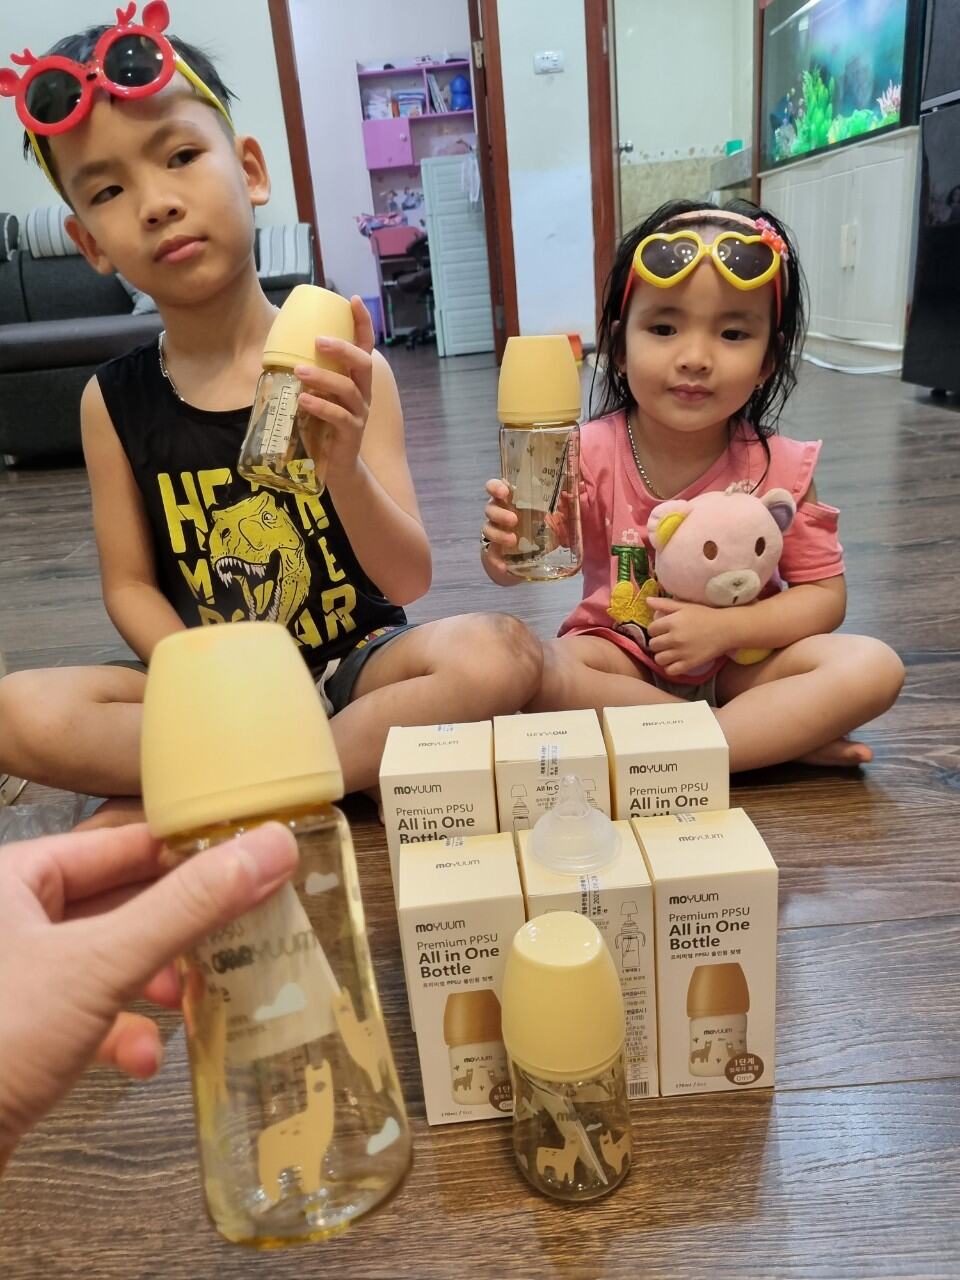 [Hỗ trợ đổi núm]-Bình sữa Moyuum hàn Quốc hình Lạc ĐÀ 170ml/270ml mẫu mới cho bé